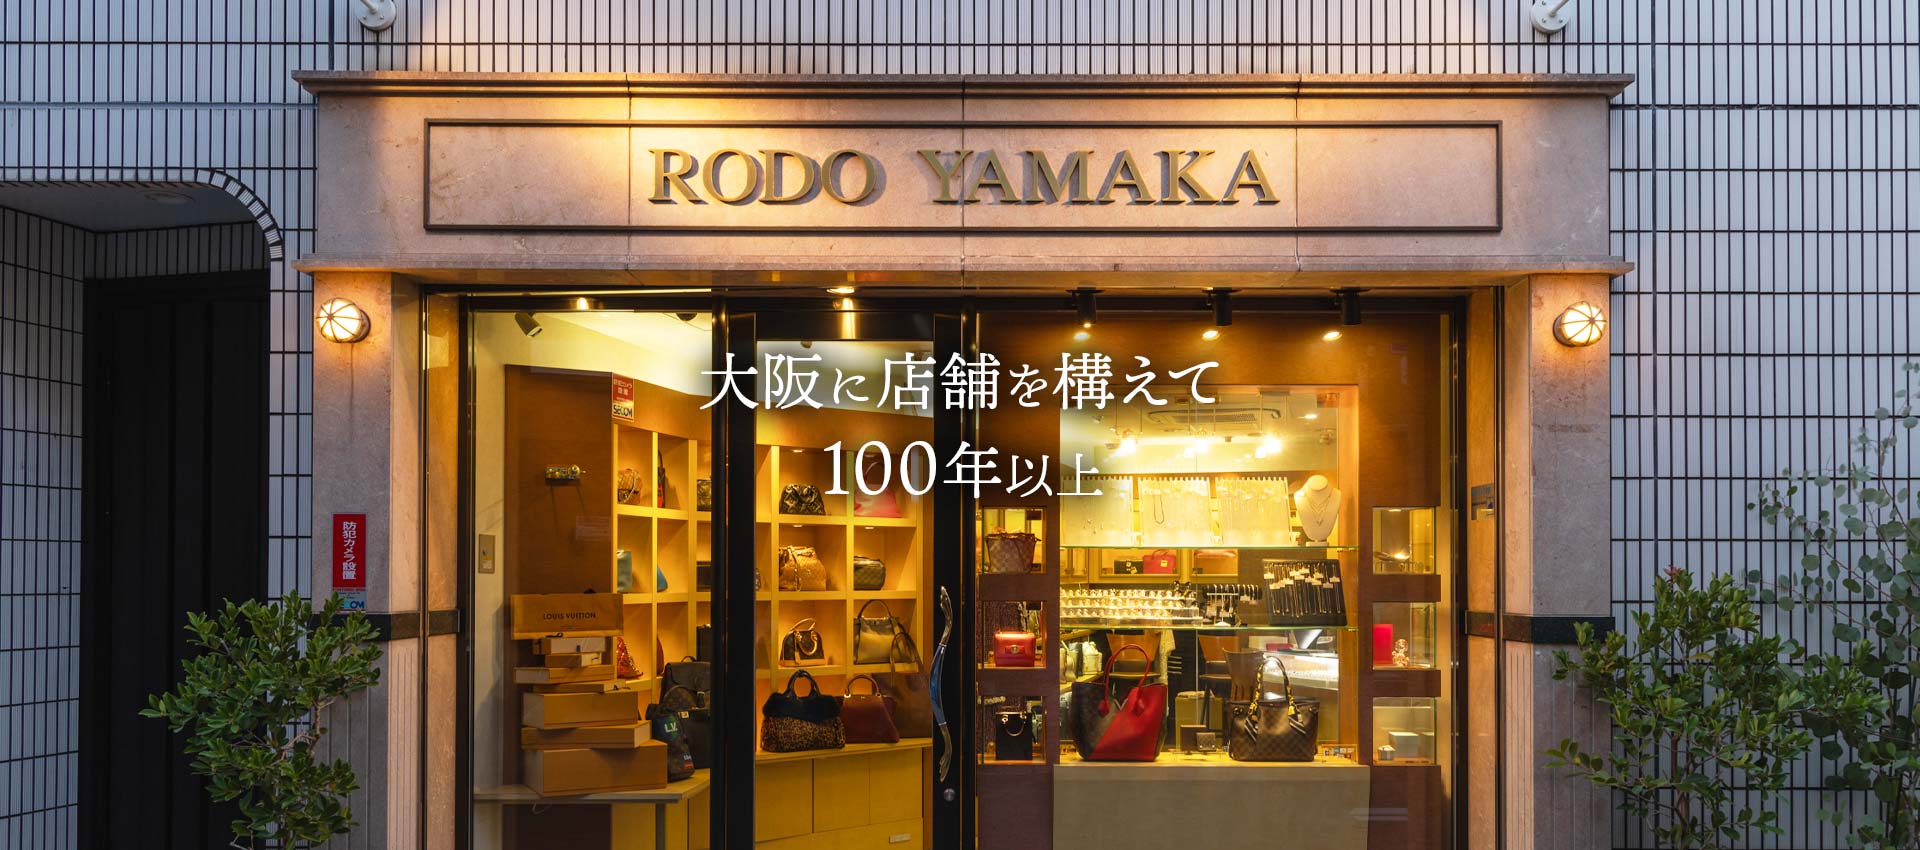 大阪に店舗を構えて100年以上